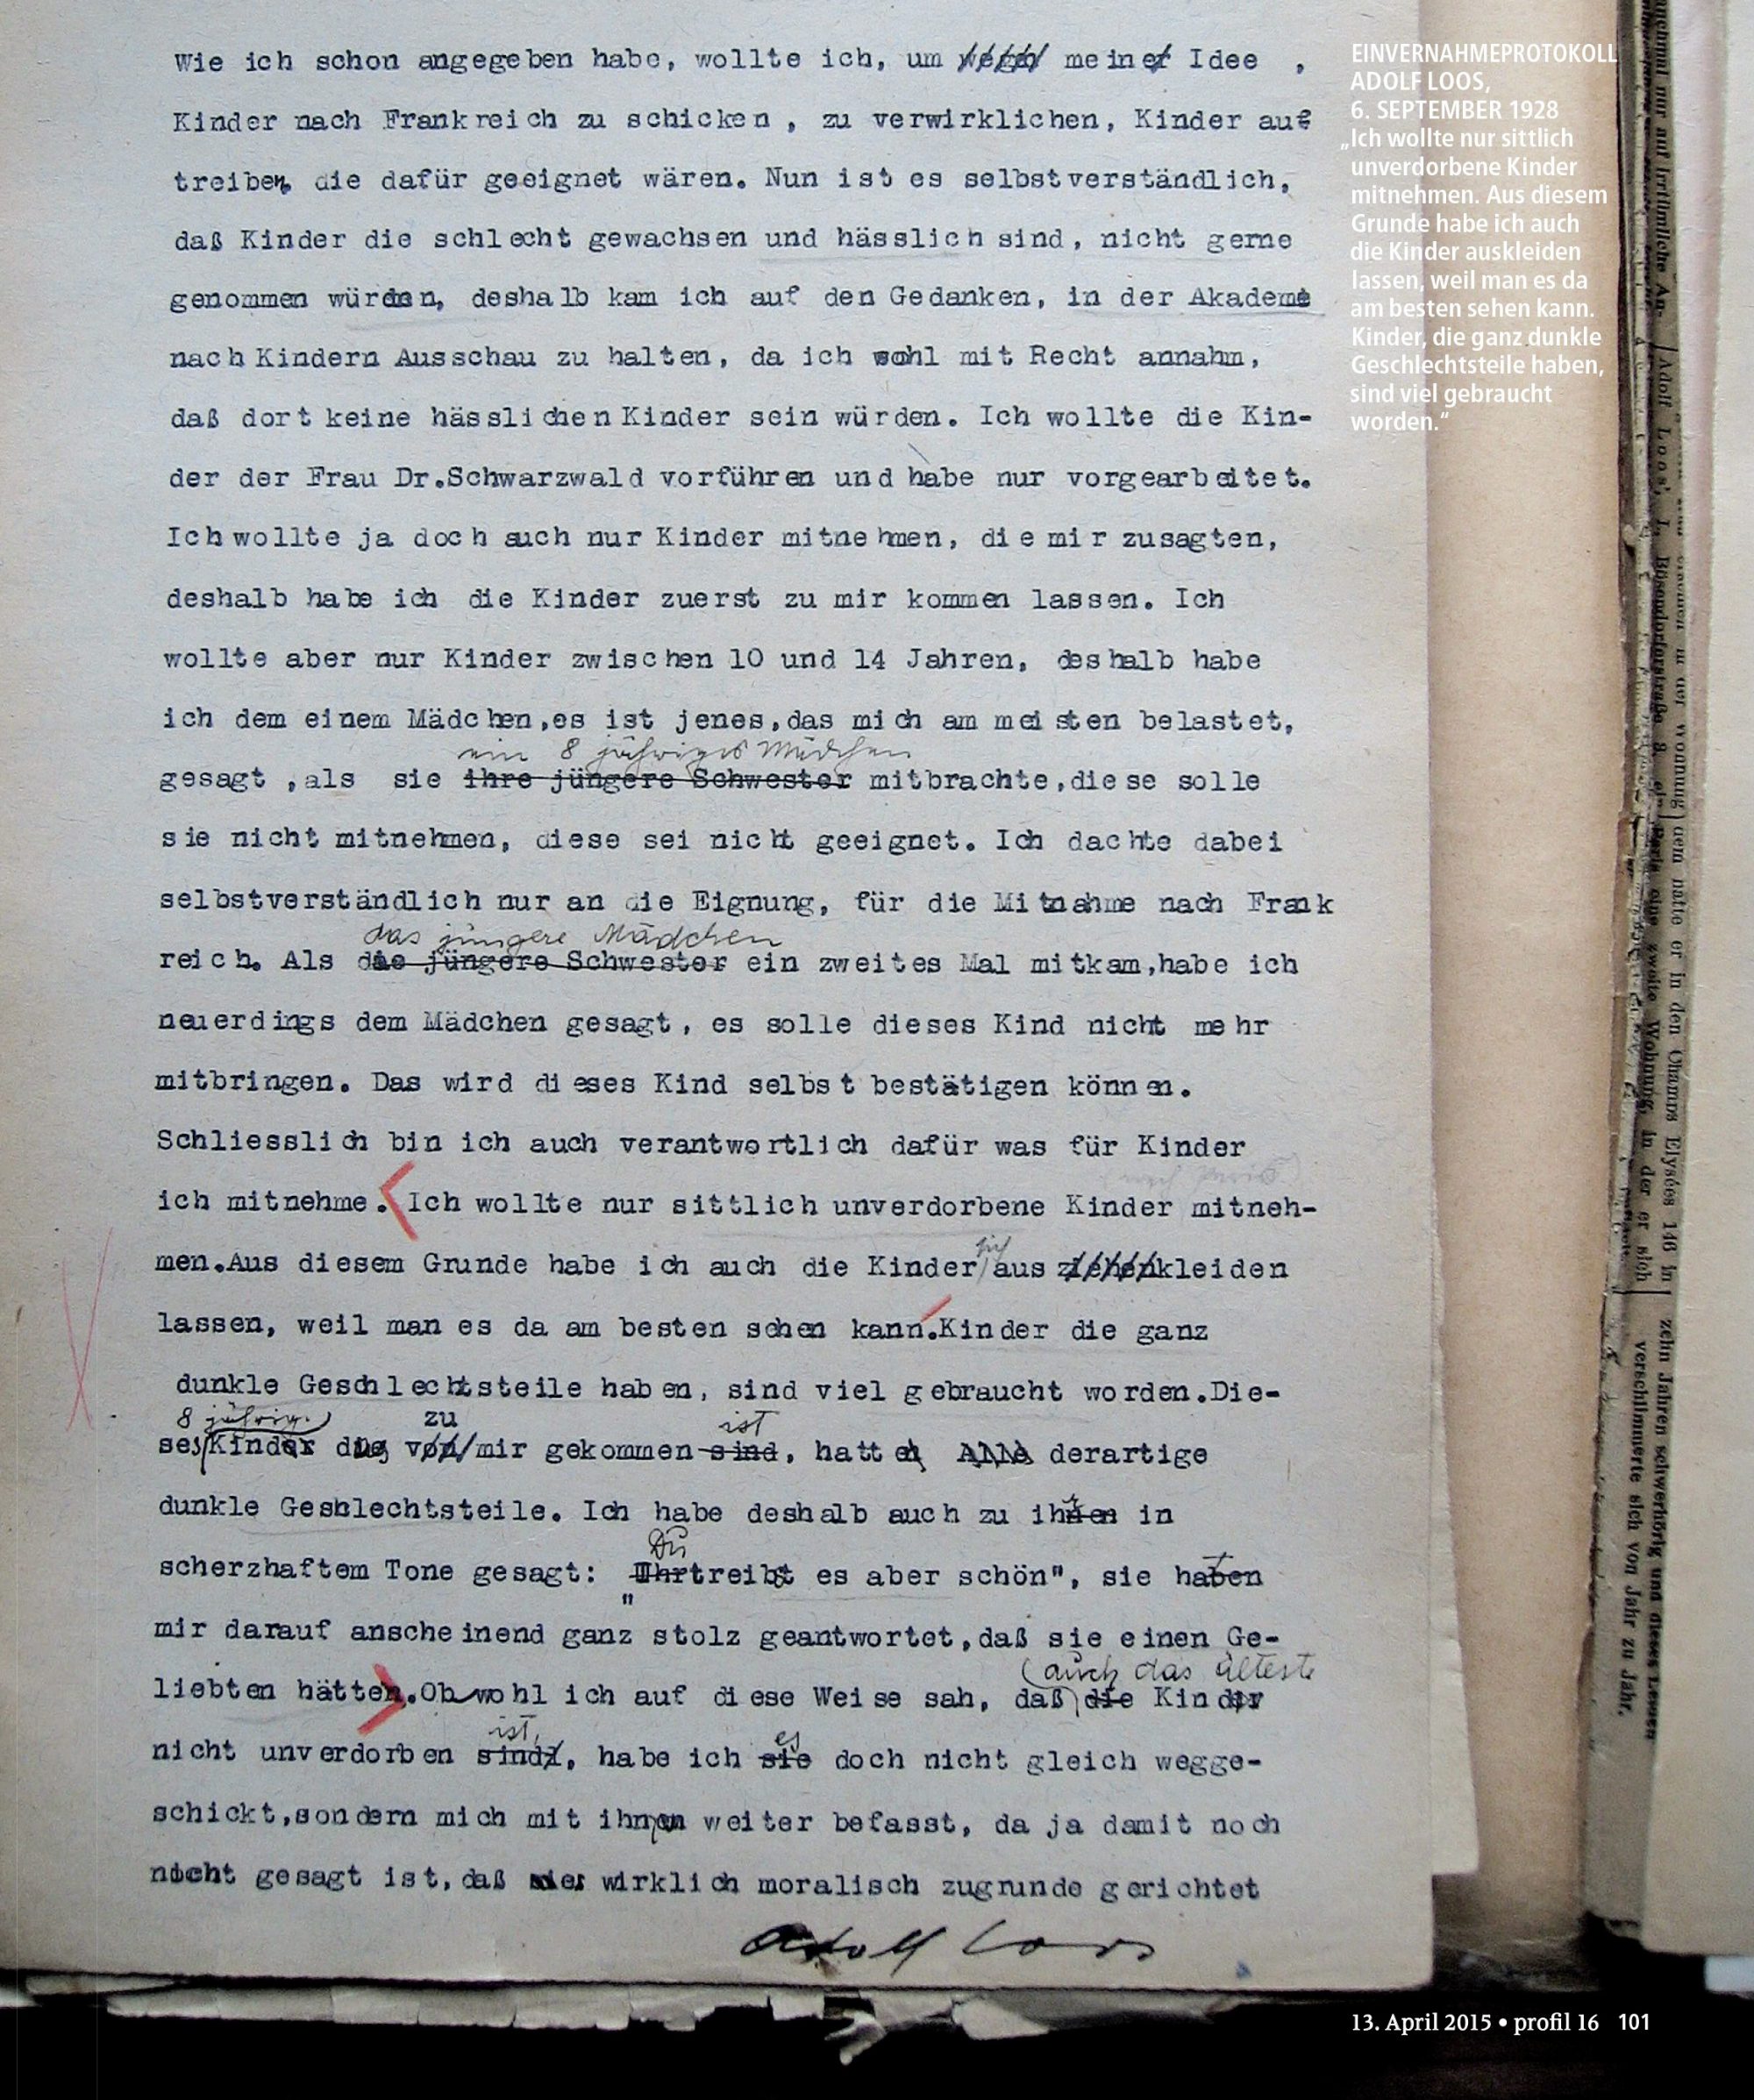 Link zum vollständigen Gerichtsakt des Strafverfahrens gegen Adolf Loos (Vr 5707/28 [27Vr 5707/28, 7Vr 5707/28, Vr 5707/1928). 120 MB pdf-Datei.